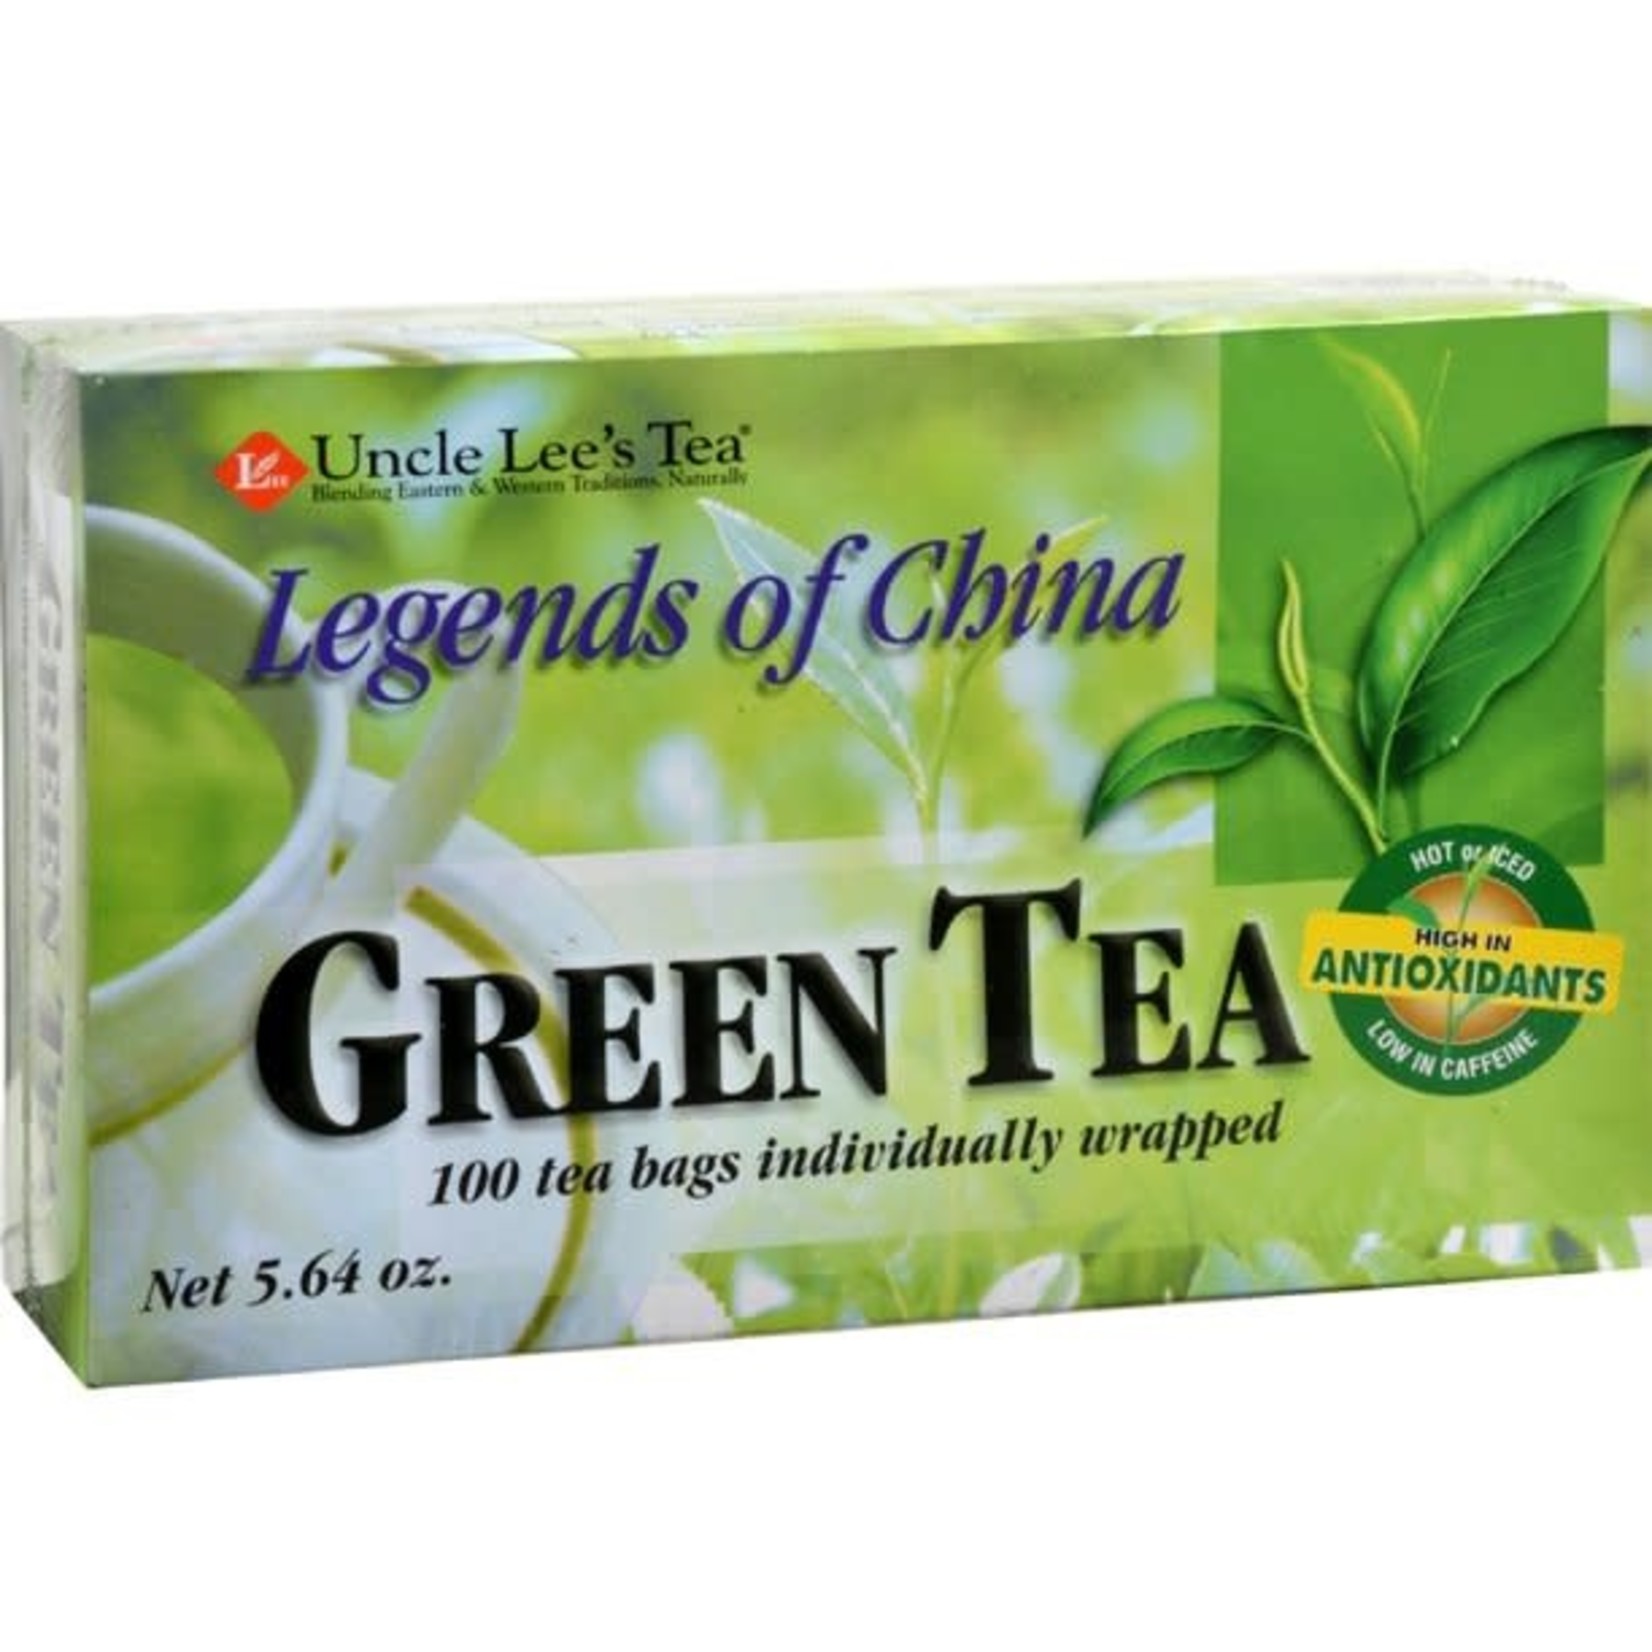 Uncle Lee’s Uncle Lee's Green Tea 100 tea bags